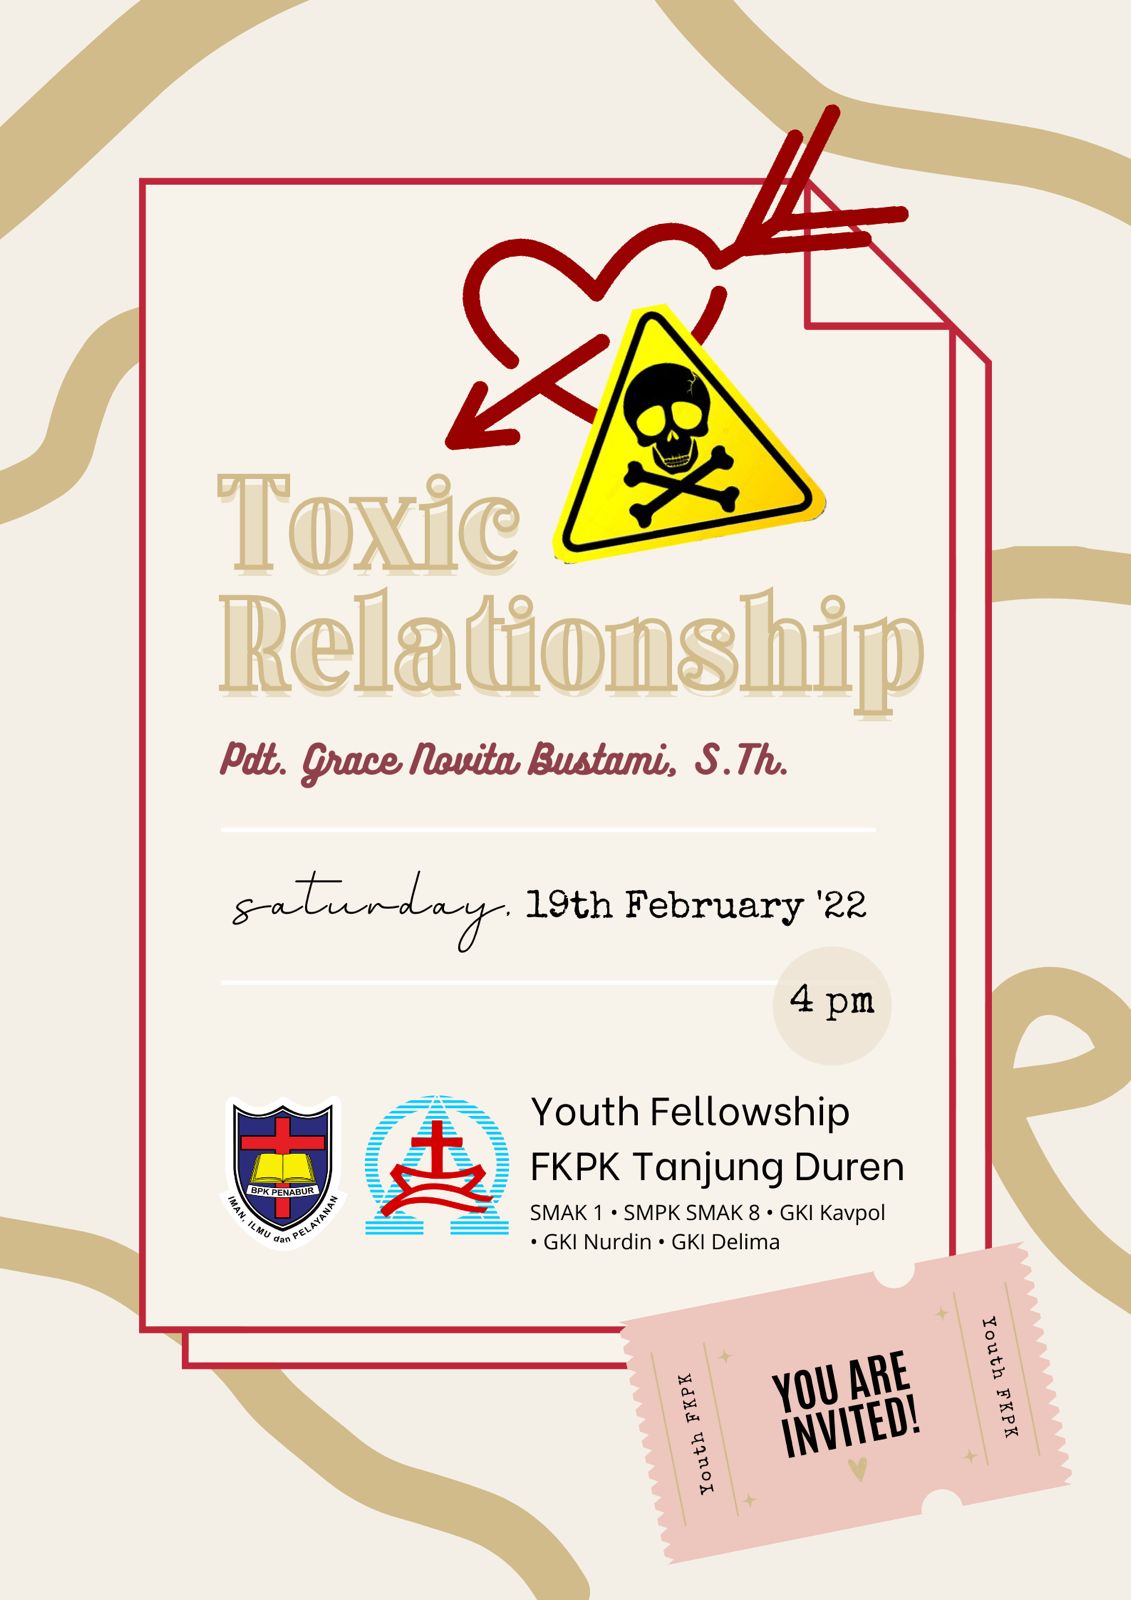 Youth fellowship FKPK Tanjung Duren dengan Tema "Toxic Relationship"